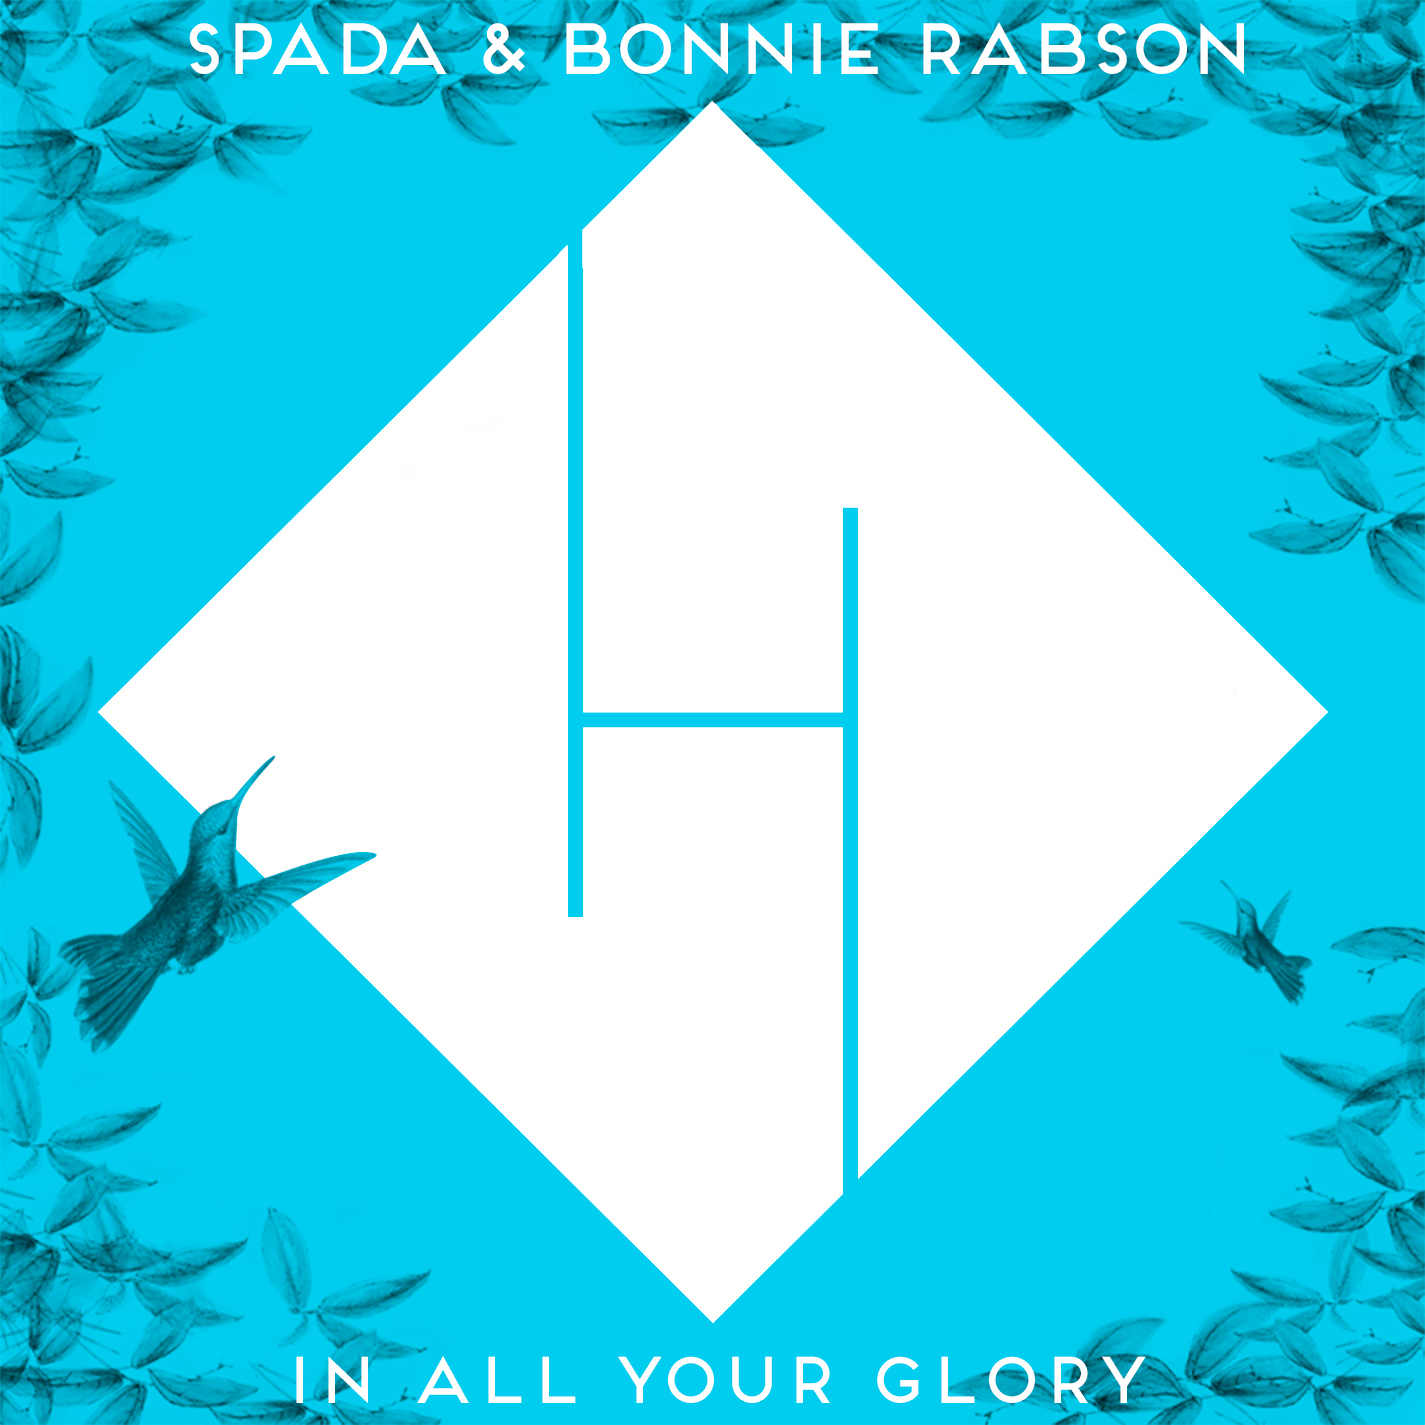 ਡਾਉਨਲੋਡ ਕਰੋ In All Your Glory - Spada & Bonnie Rabson (Remix Boris Brejcha) PREVIEW